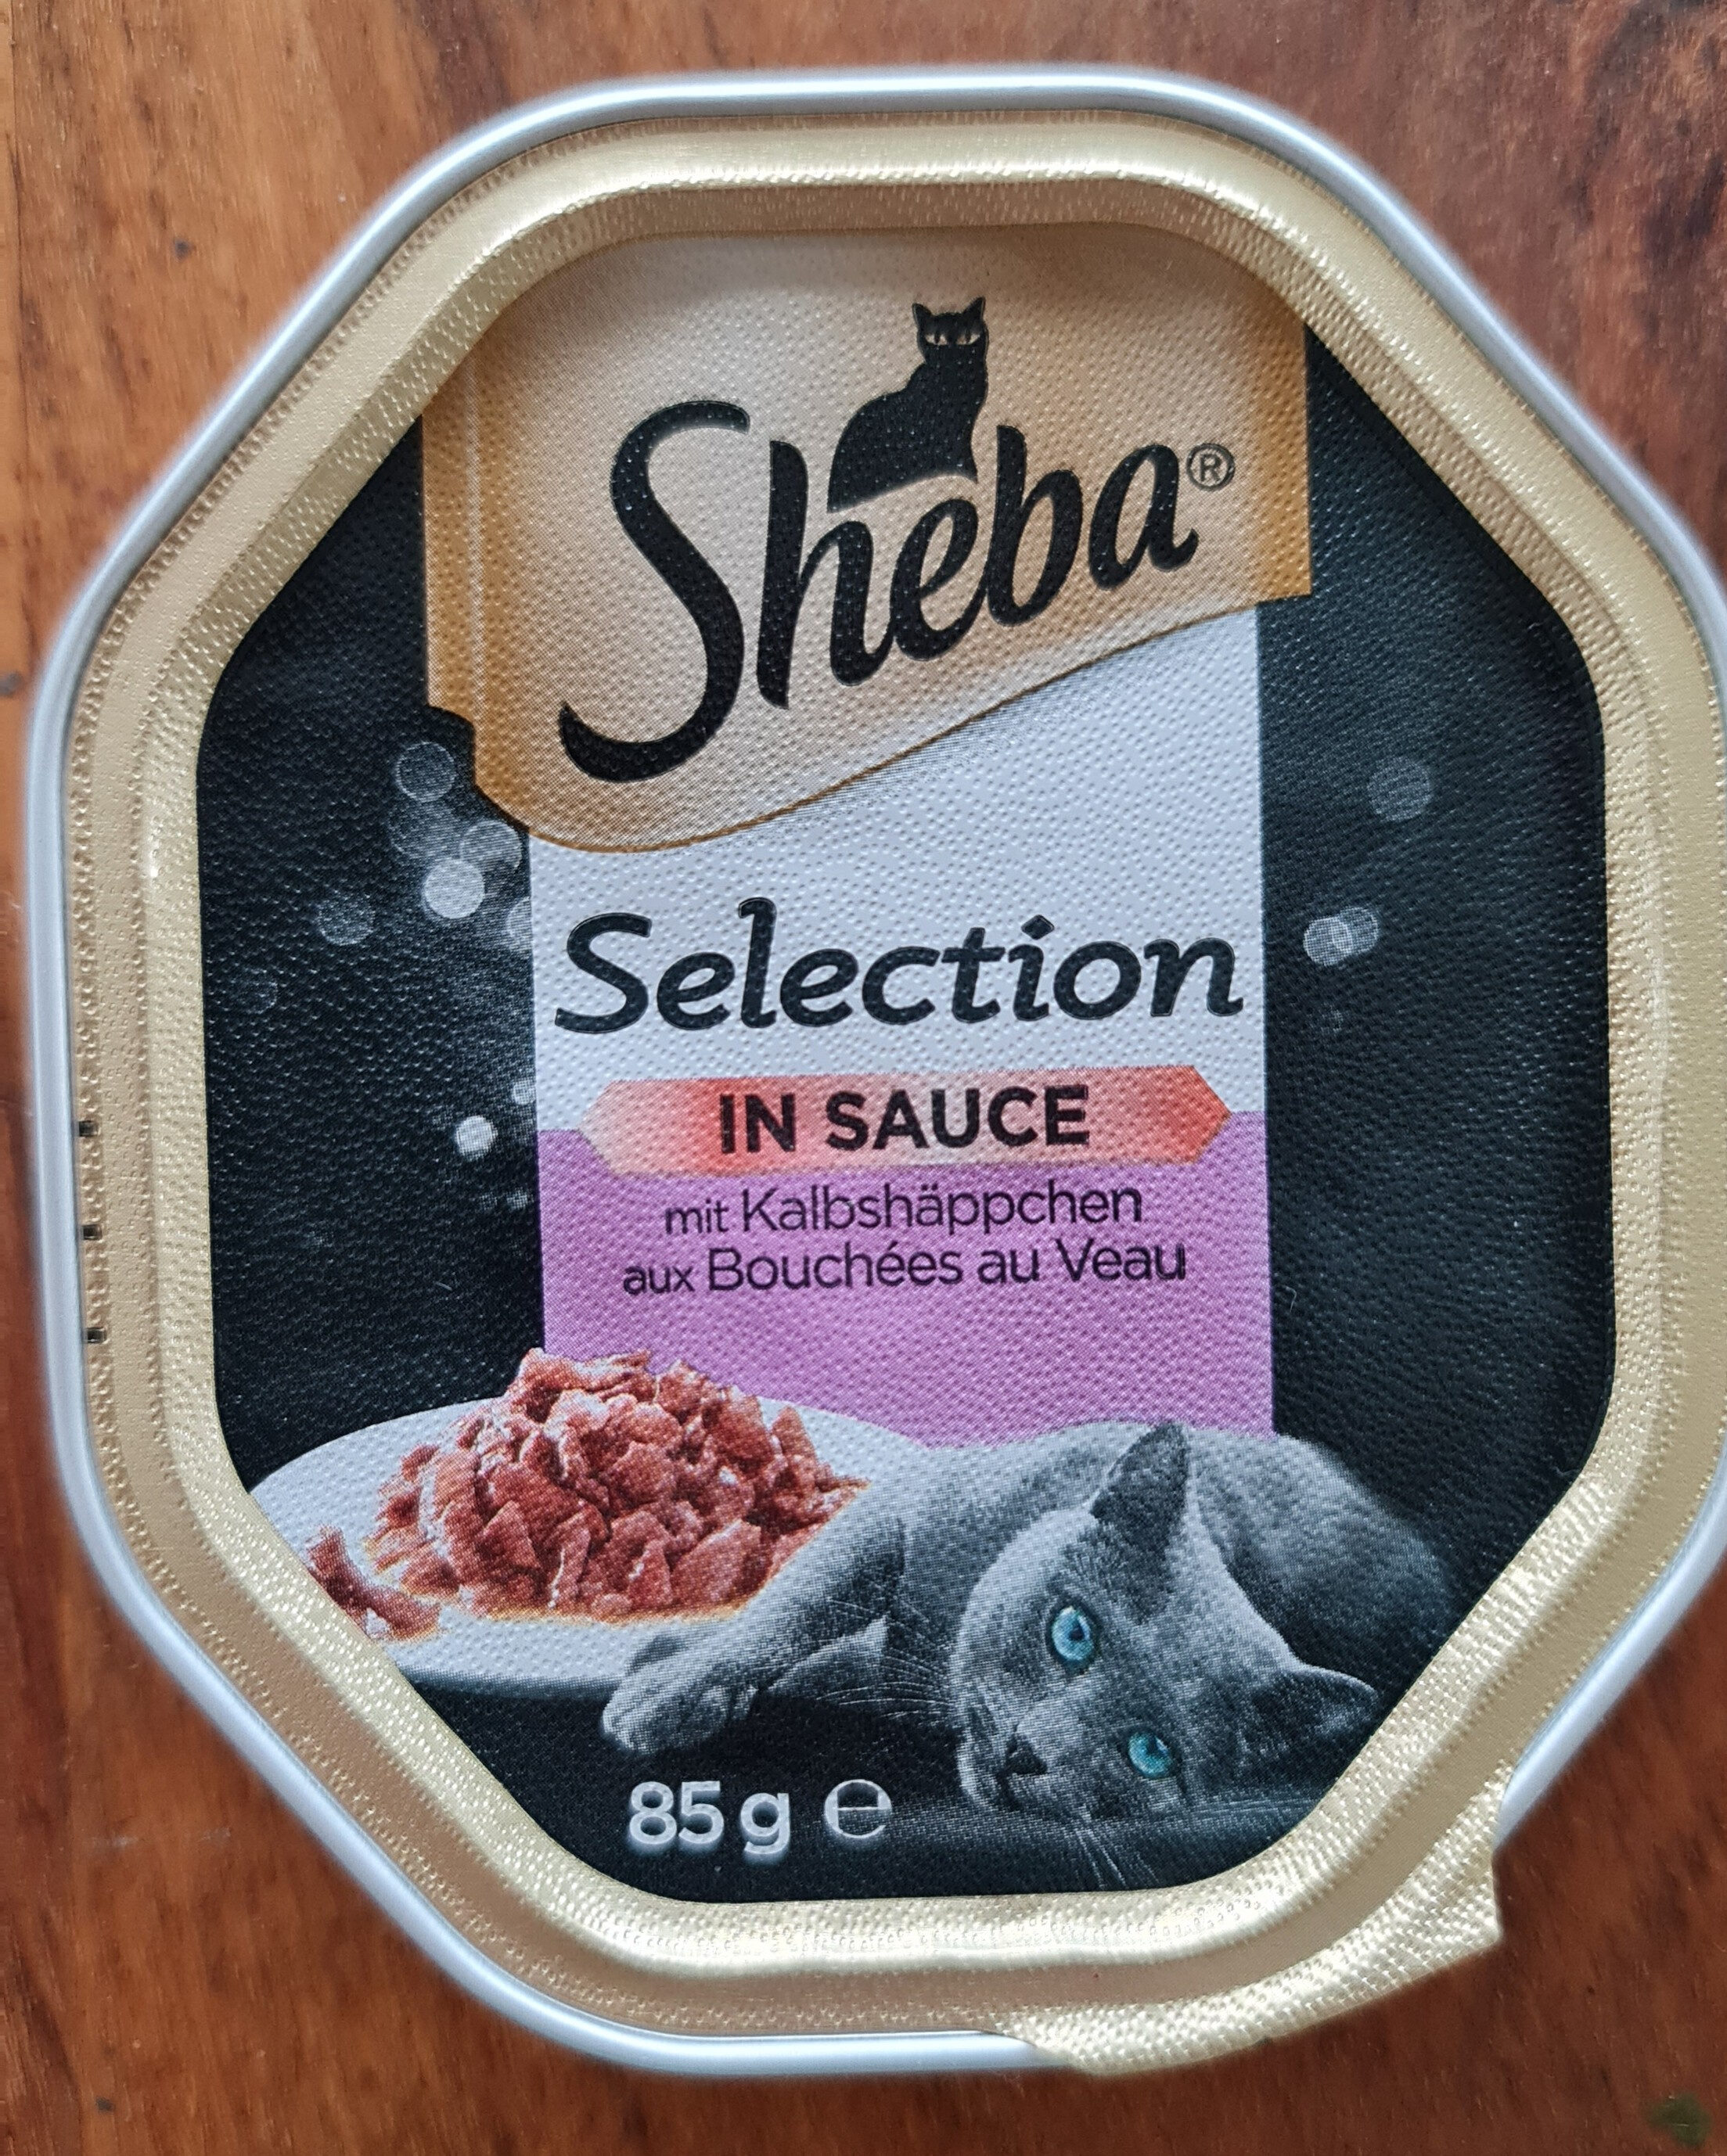 Sheba Selection in Sauce Kalbshäppchen - Product - de